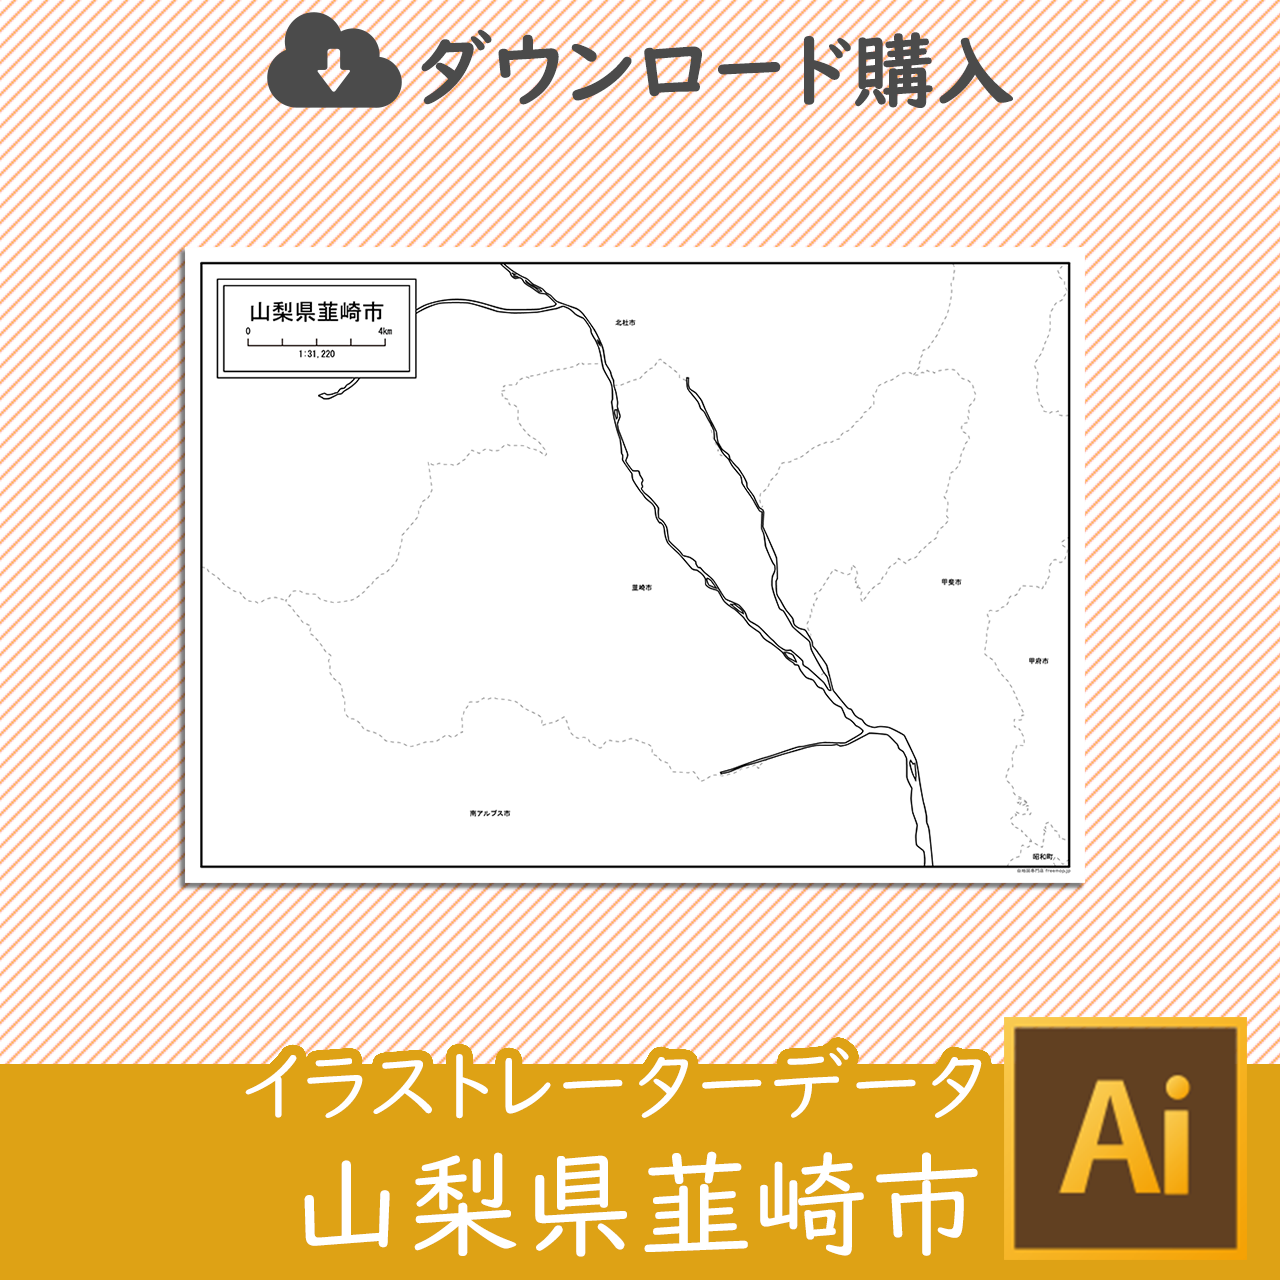 韮崎市のaiデータのサムネイル画像